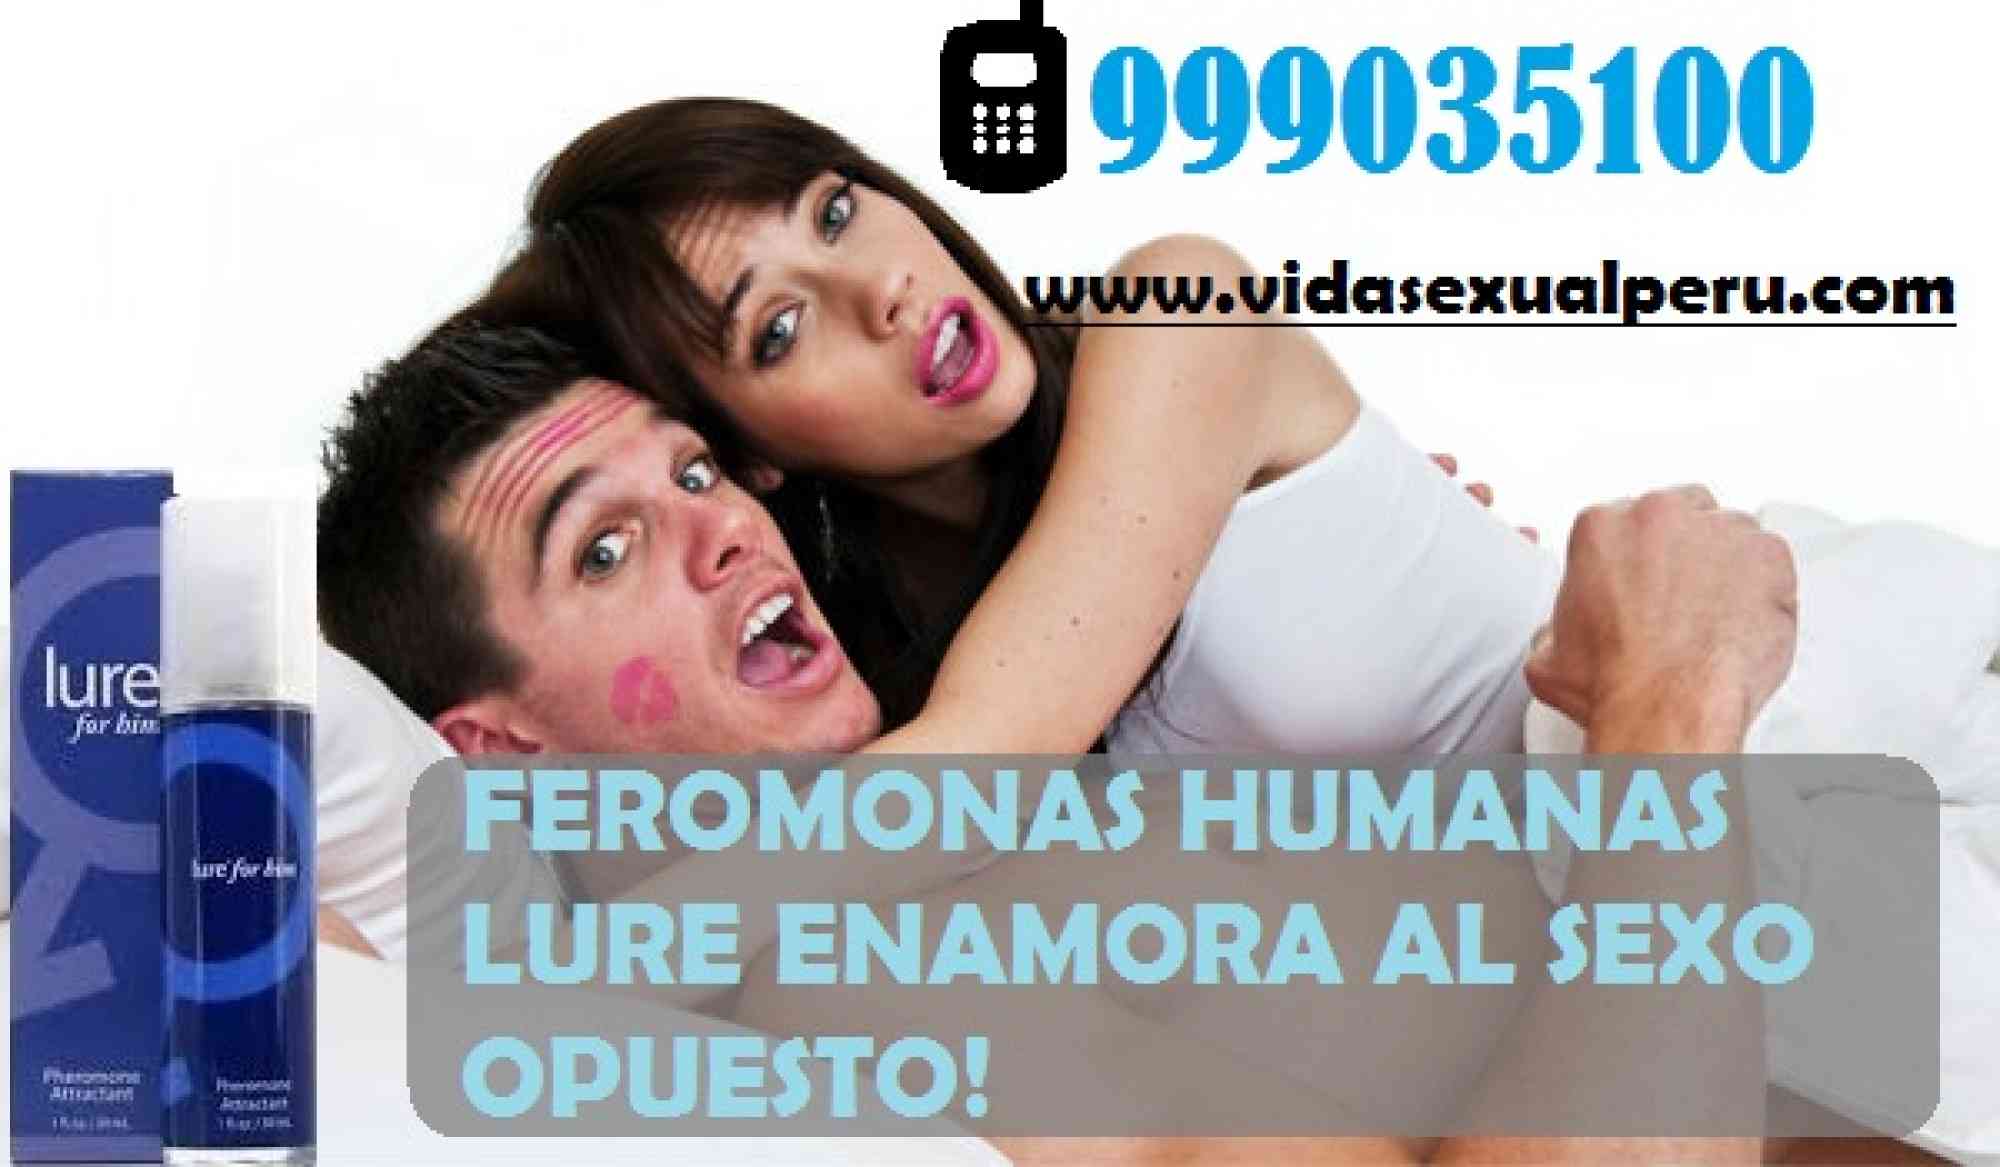 FEROMONAS TRUJILLO CEL.999035100 en anuncio clasificado